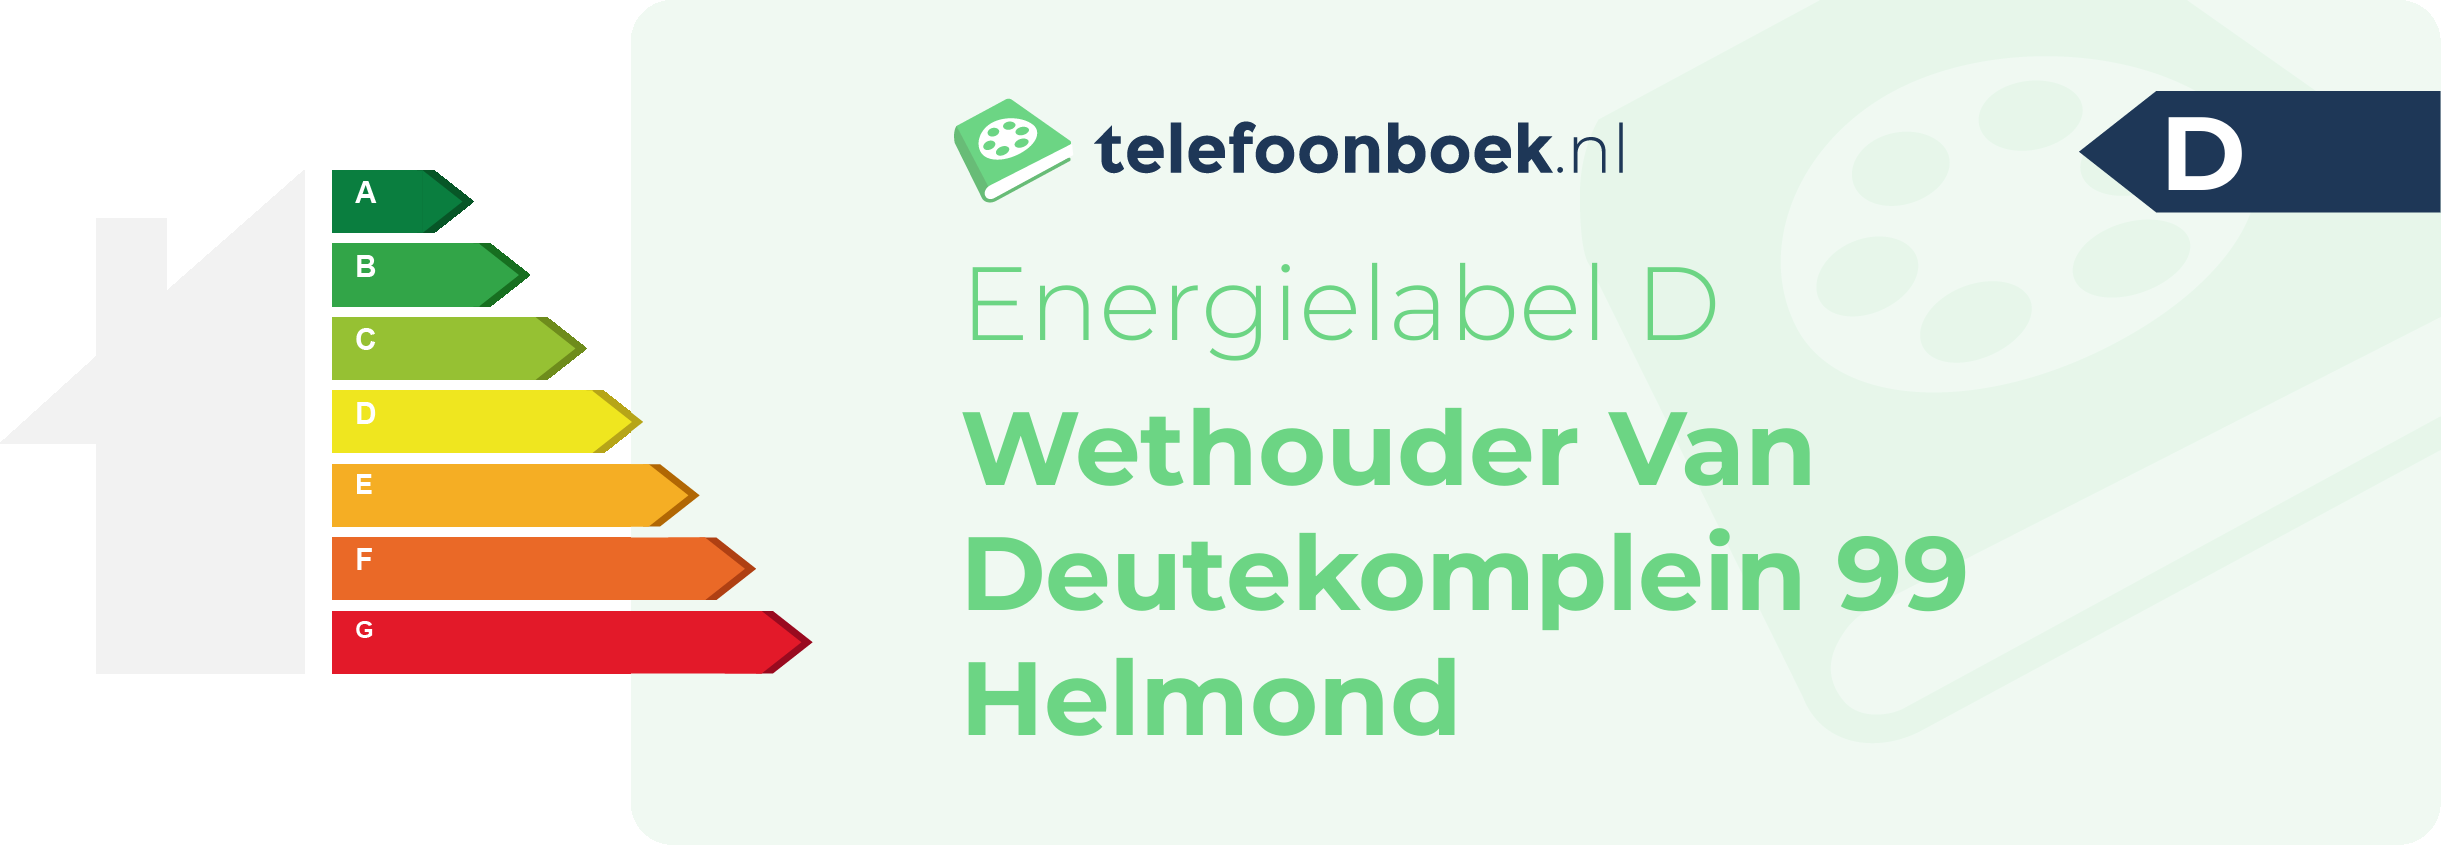 Energielabel Wethouder Van Deutekomplein 99 Helmond